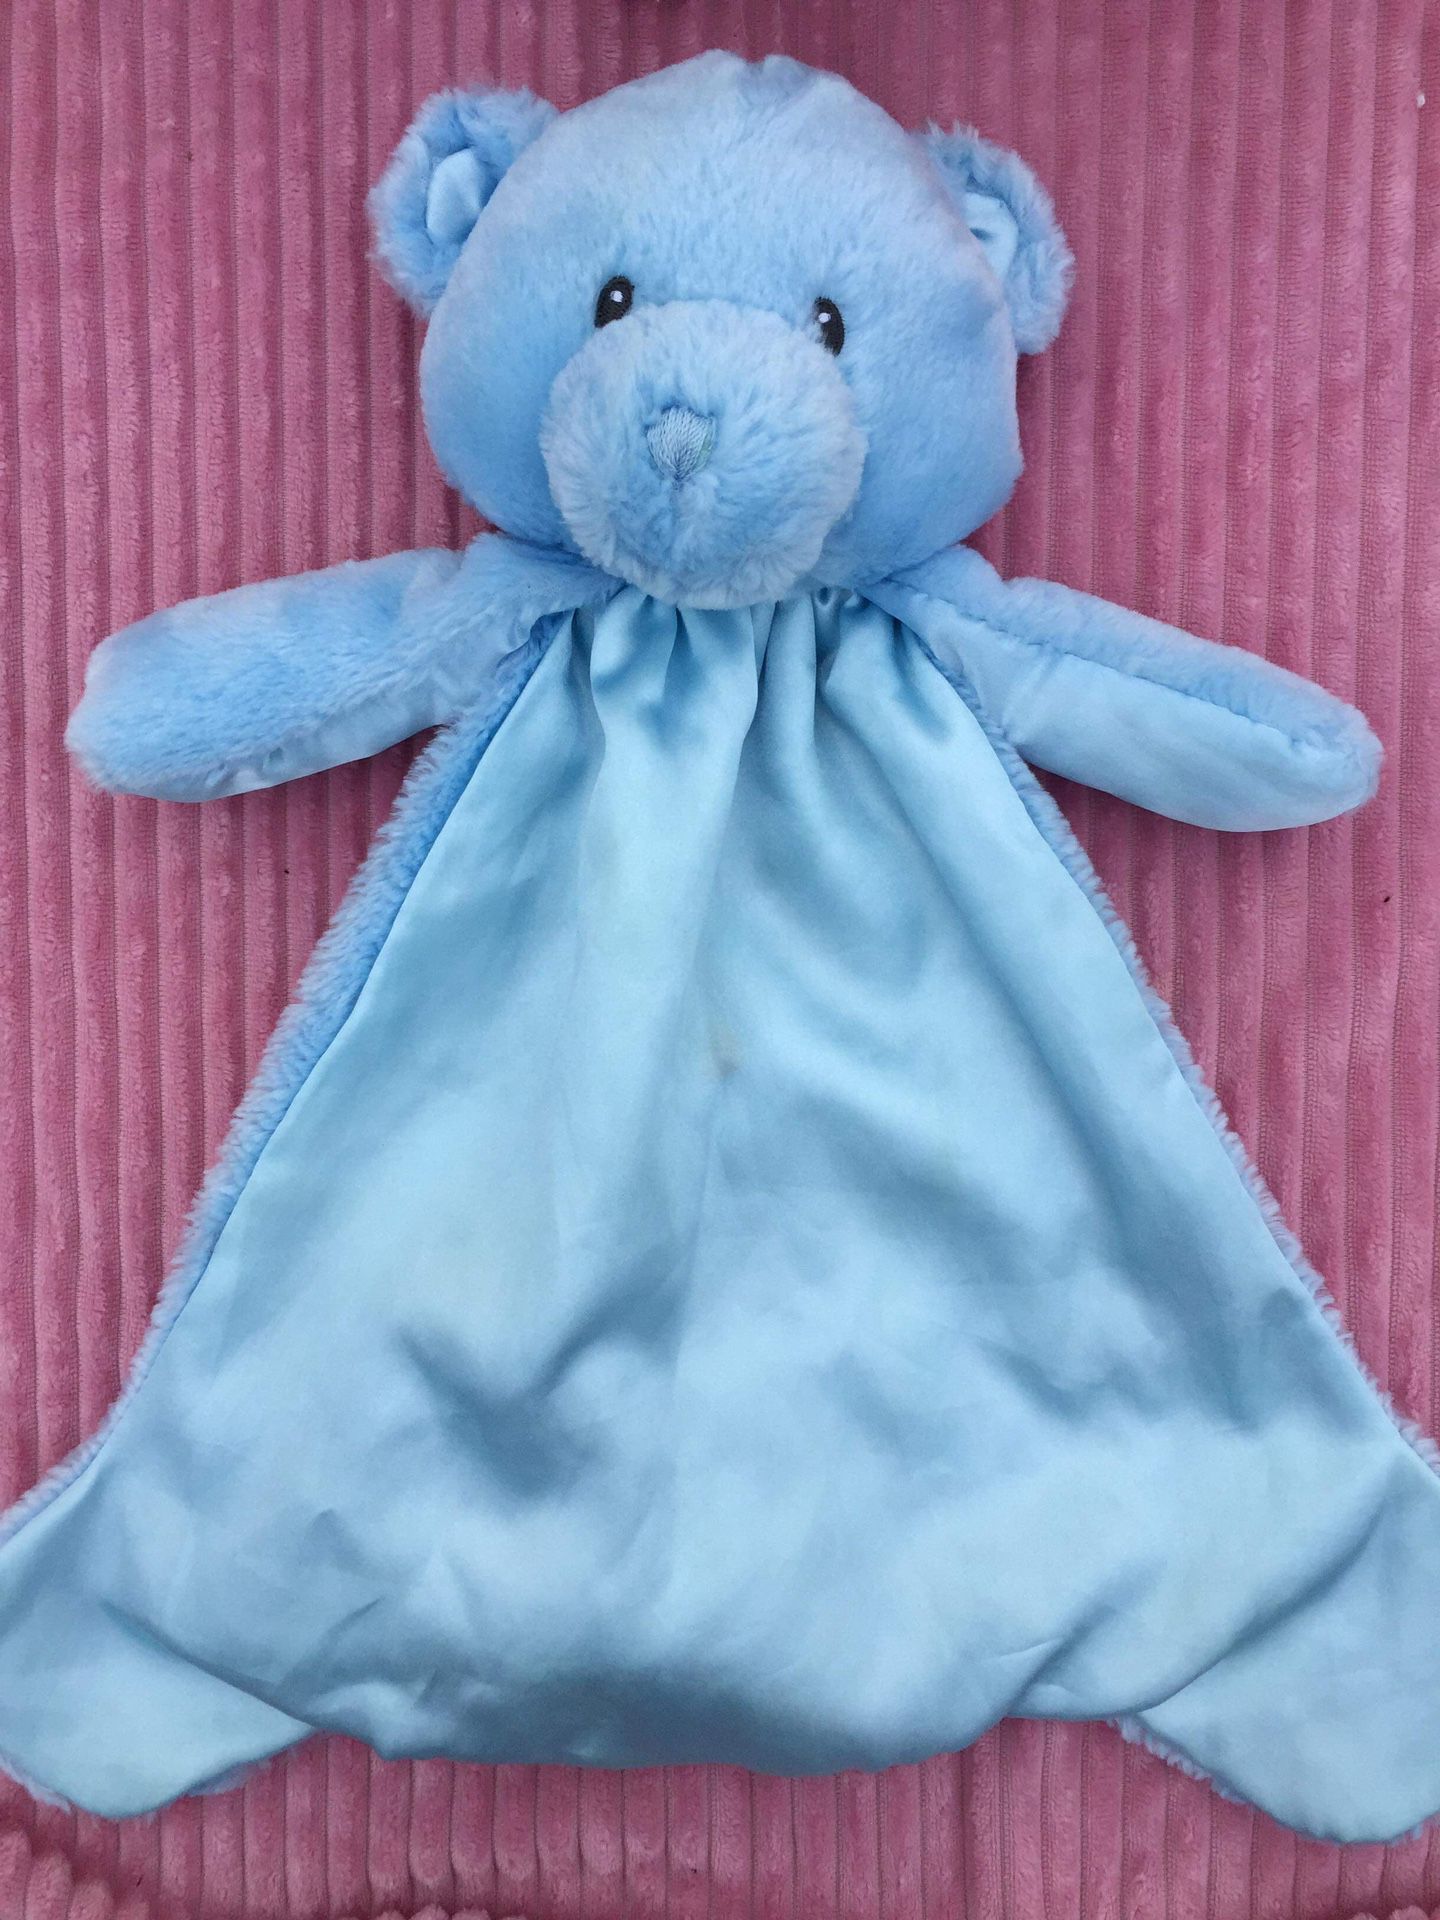 Gund Baby Plush My First Teddy Bear Lovey Huggy Buddy Blue 15” security Blanket